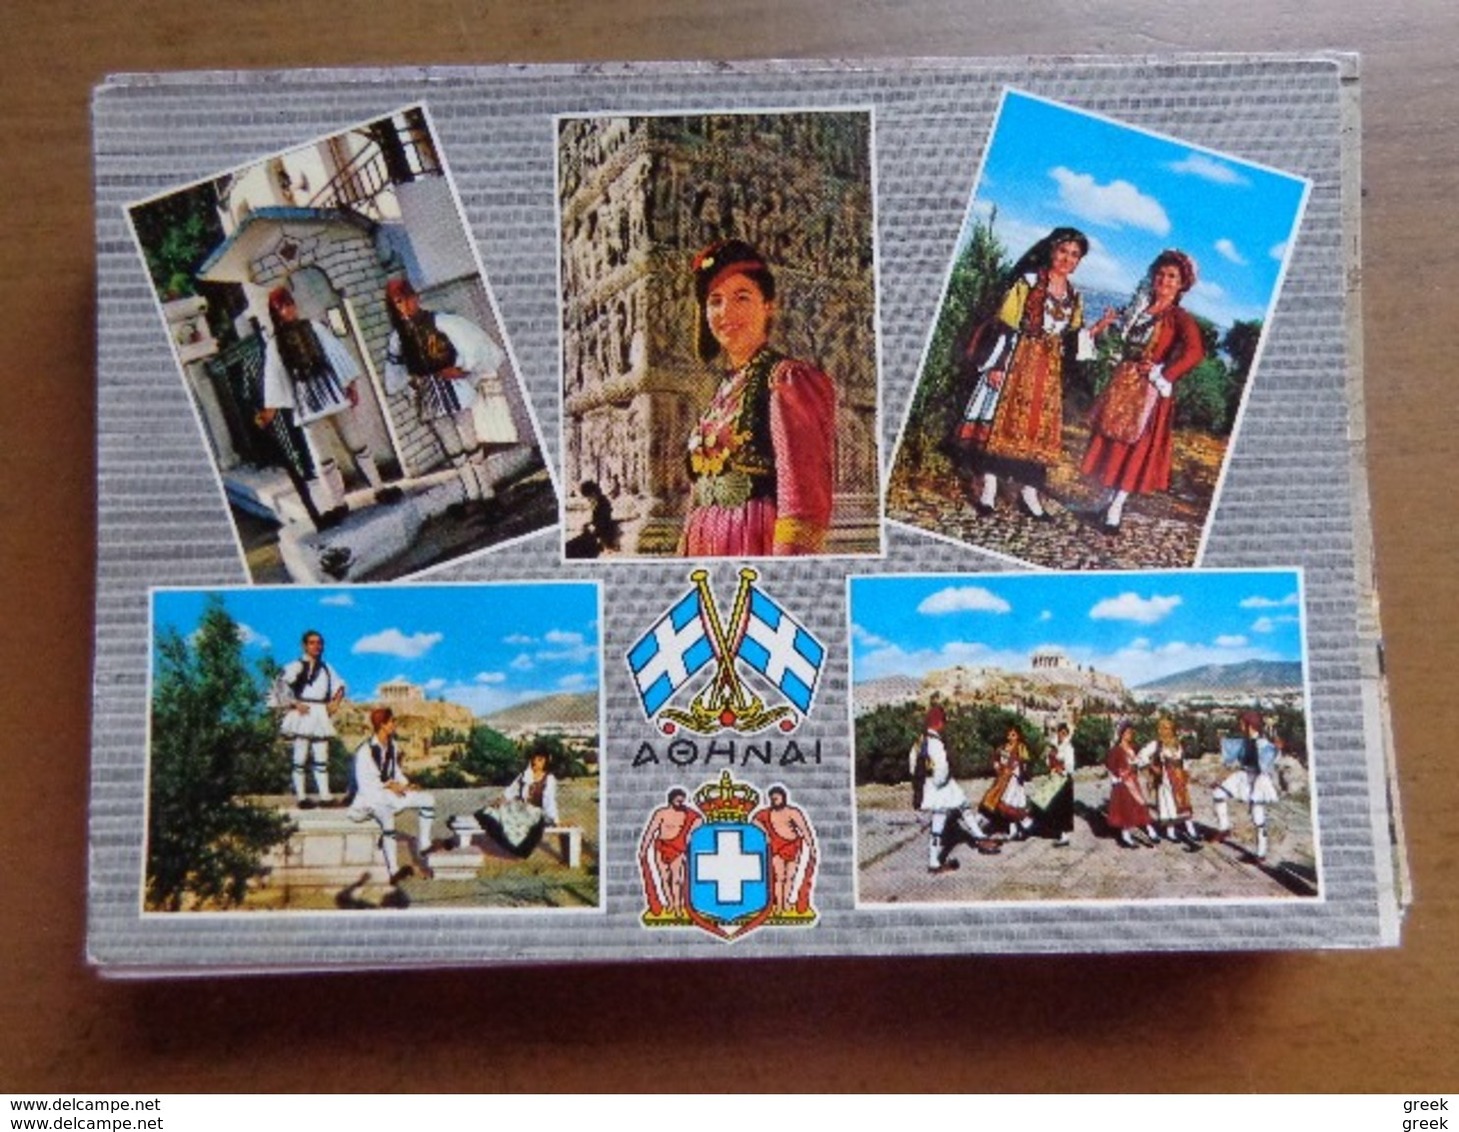 Doos postkaarten (3kg940) Allerlei landen en thema's, zie foto's (Naakt, Transport, humor ...)